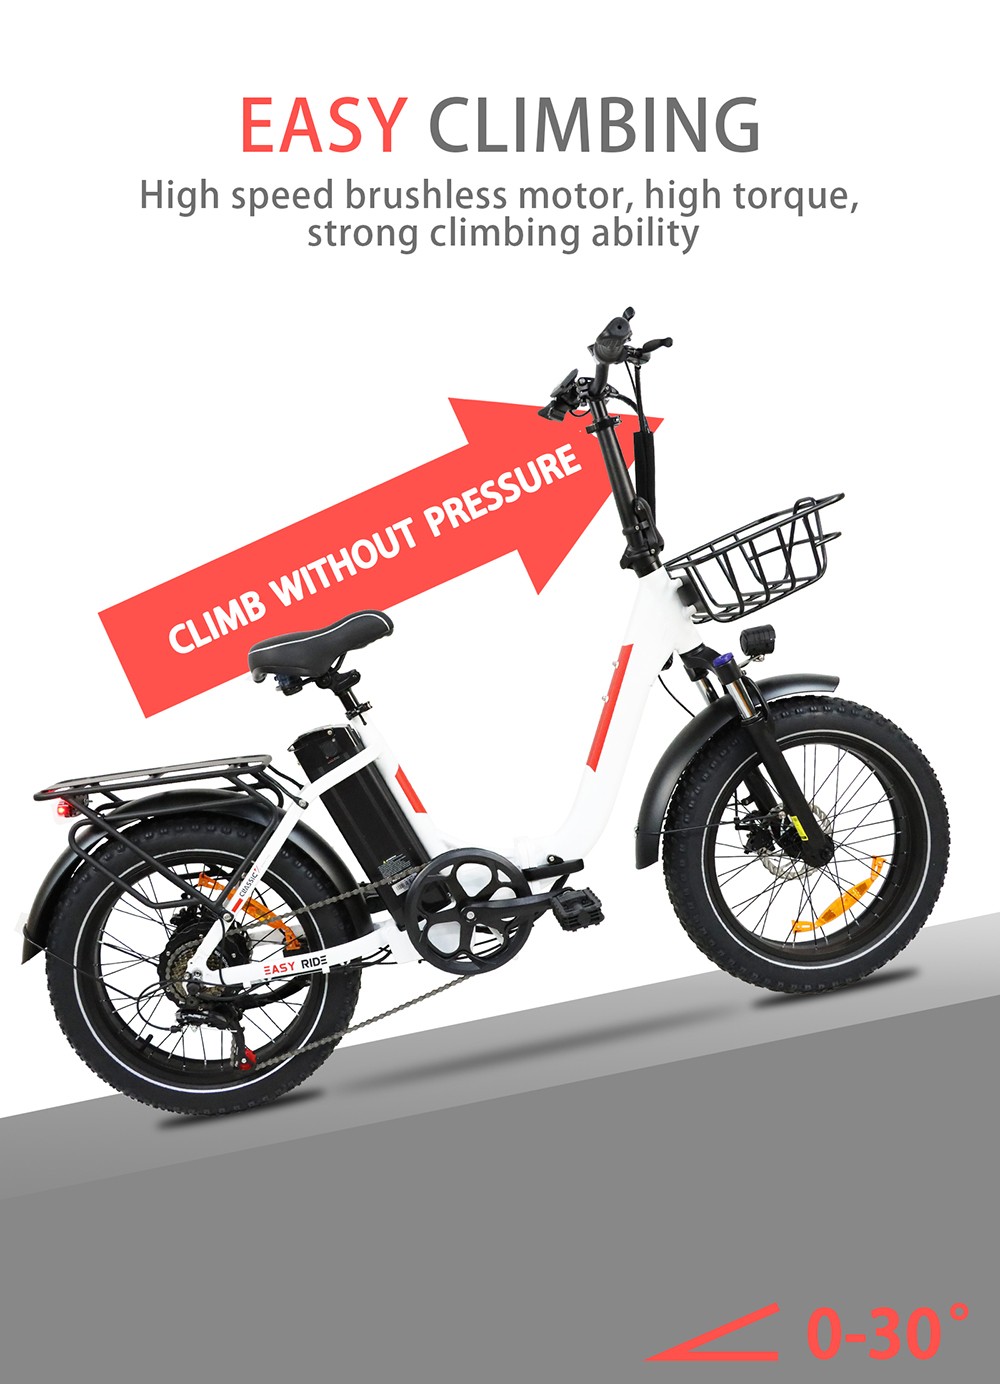 BAOLUJIE DZ2030 elektromos kerékpár, 20 * 4.0 hüvelykes gumiabroncs 500 W motor 48 V 13 Ah cserélhető akkumulátor 40 km/h Max sebesség 35-45 km Hatótáv SHIMANO 7 sebességes - fekete